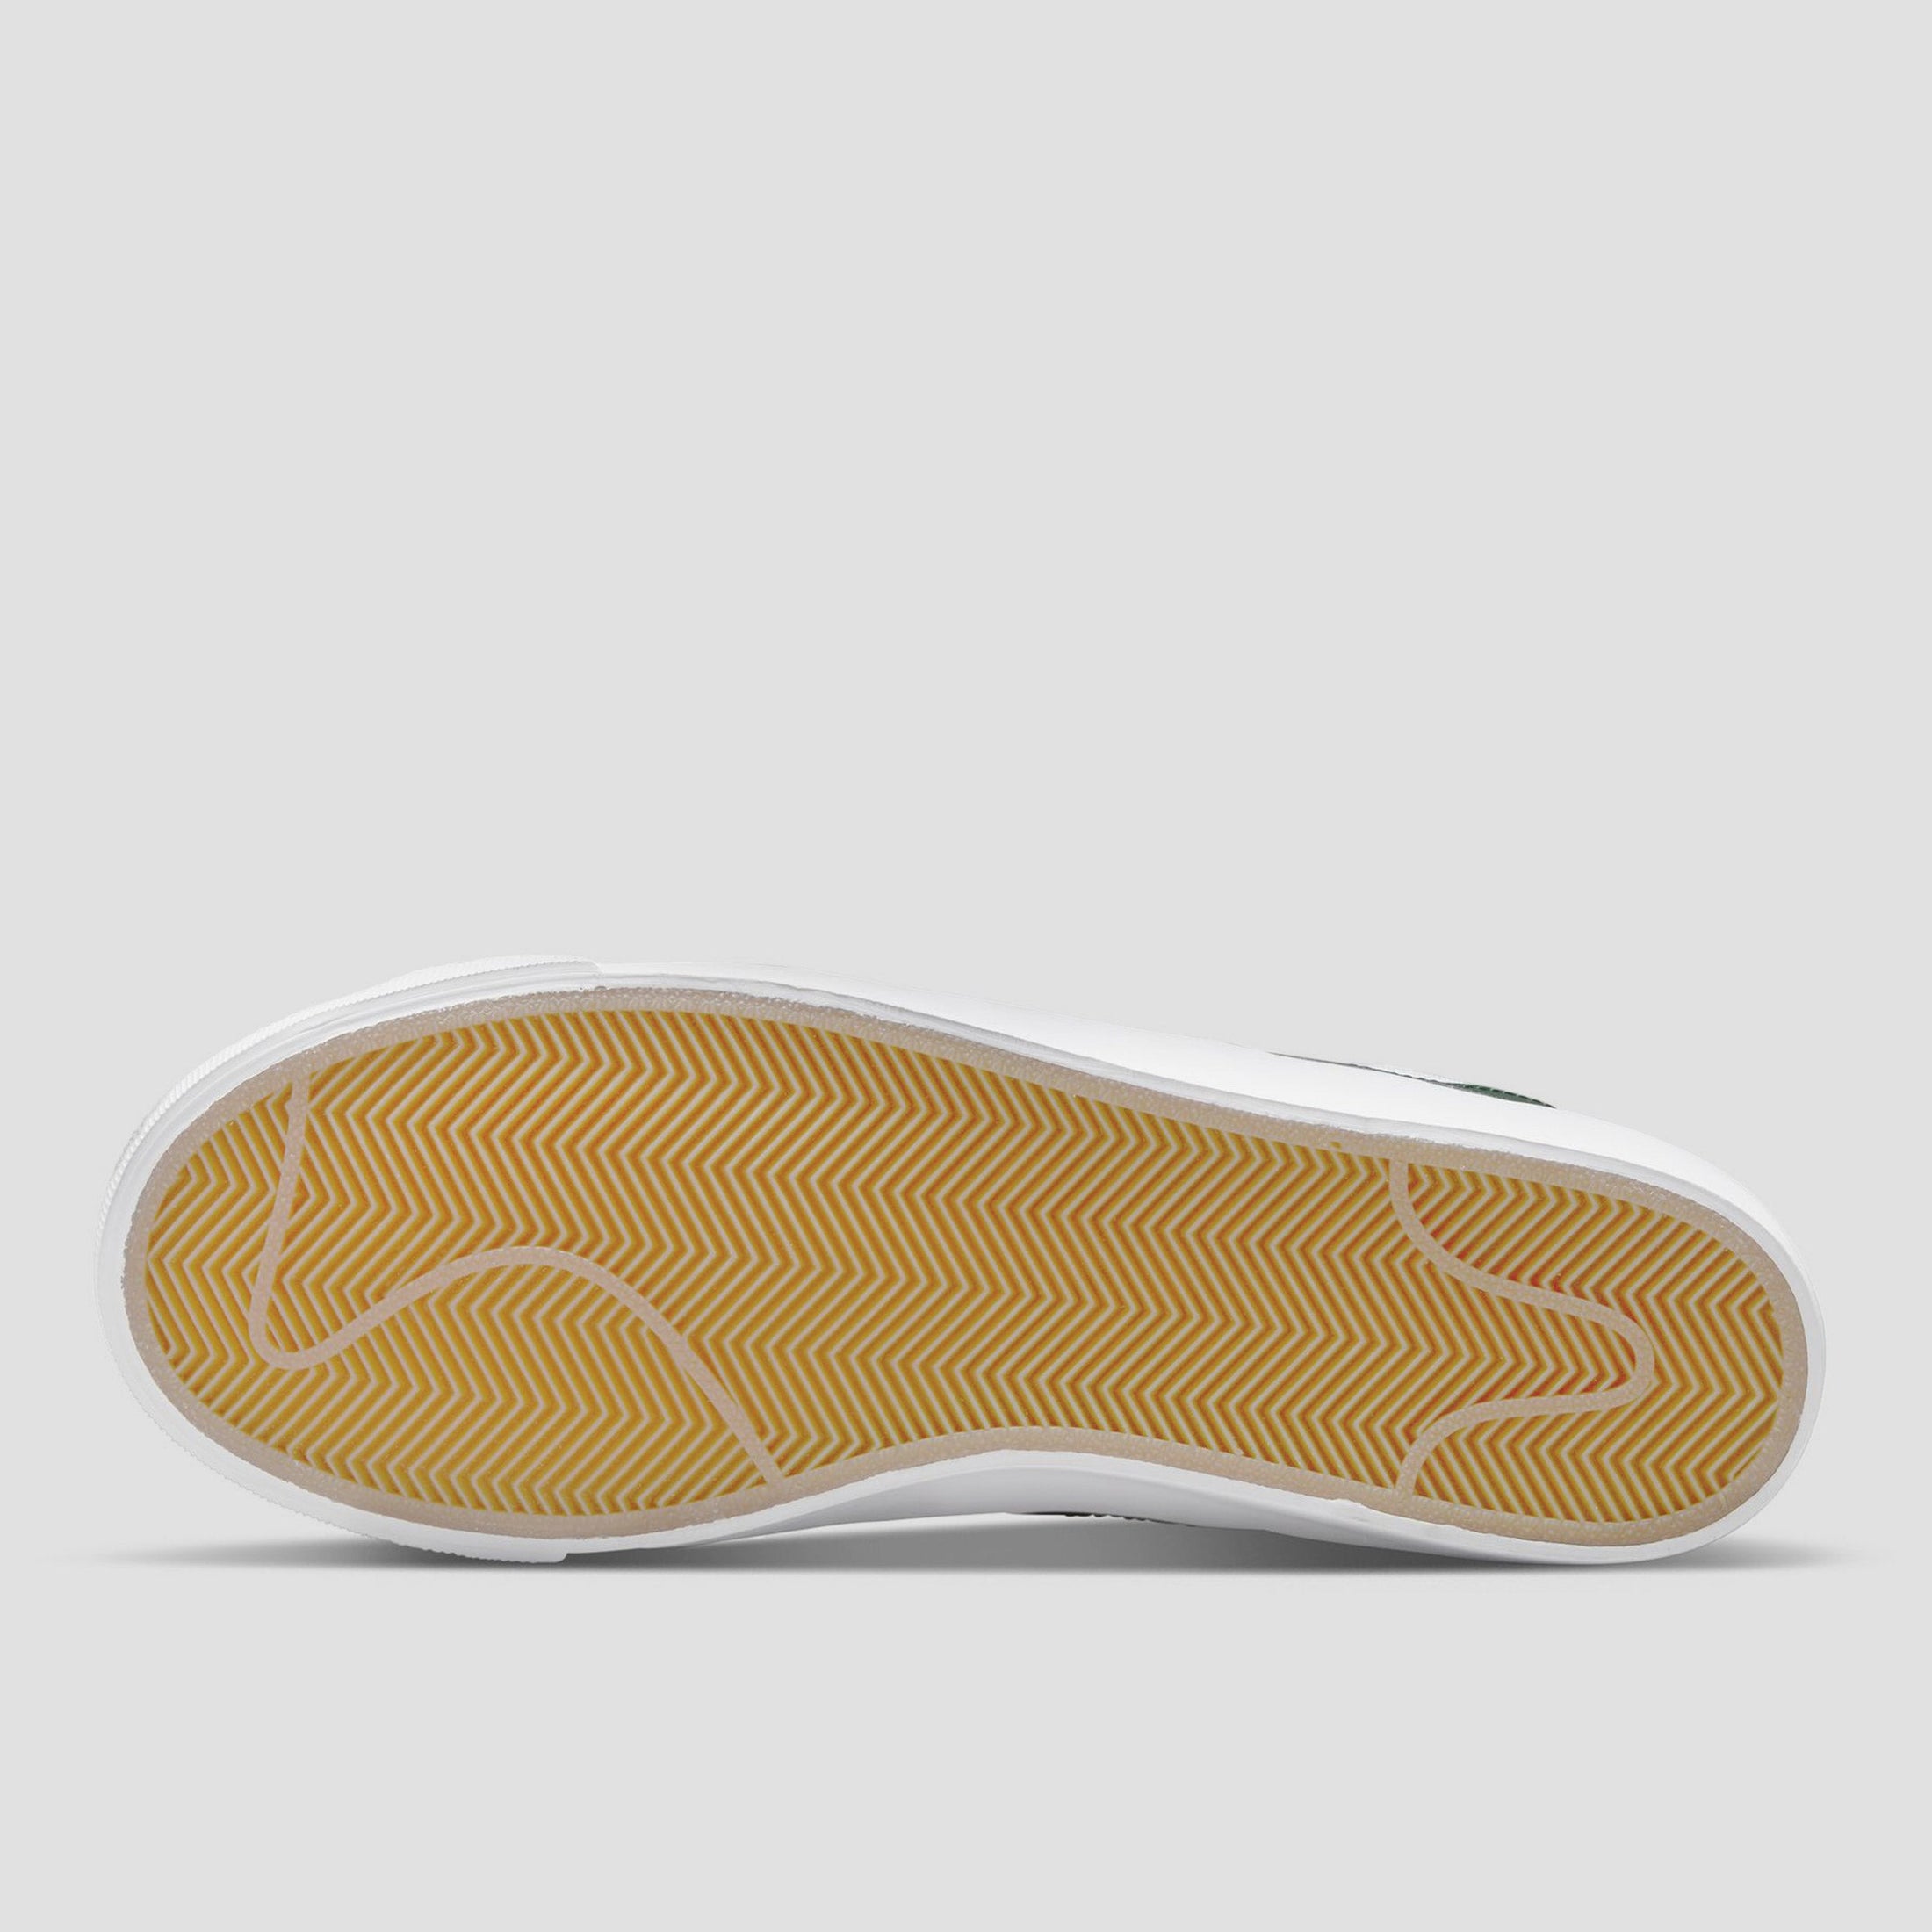 Nike SB Blazer Low Pro GT Shoes White / Fir - White - Gum Light Brown